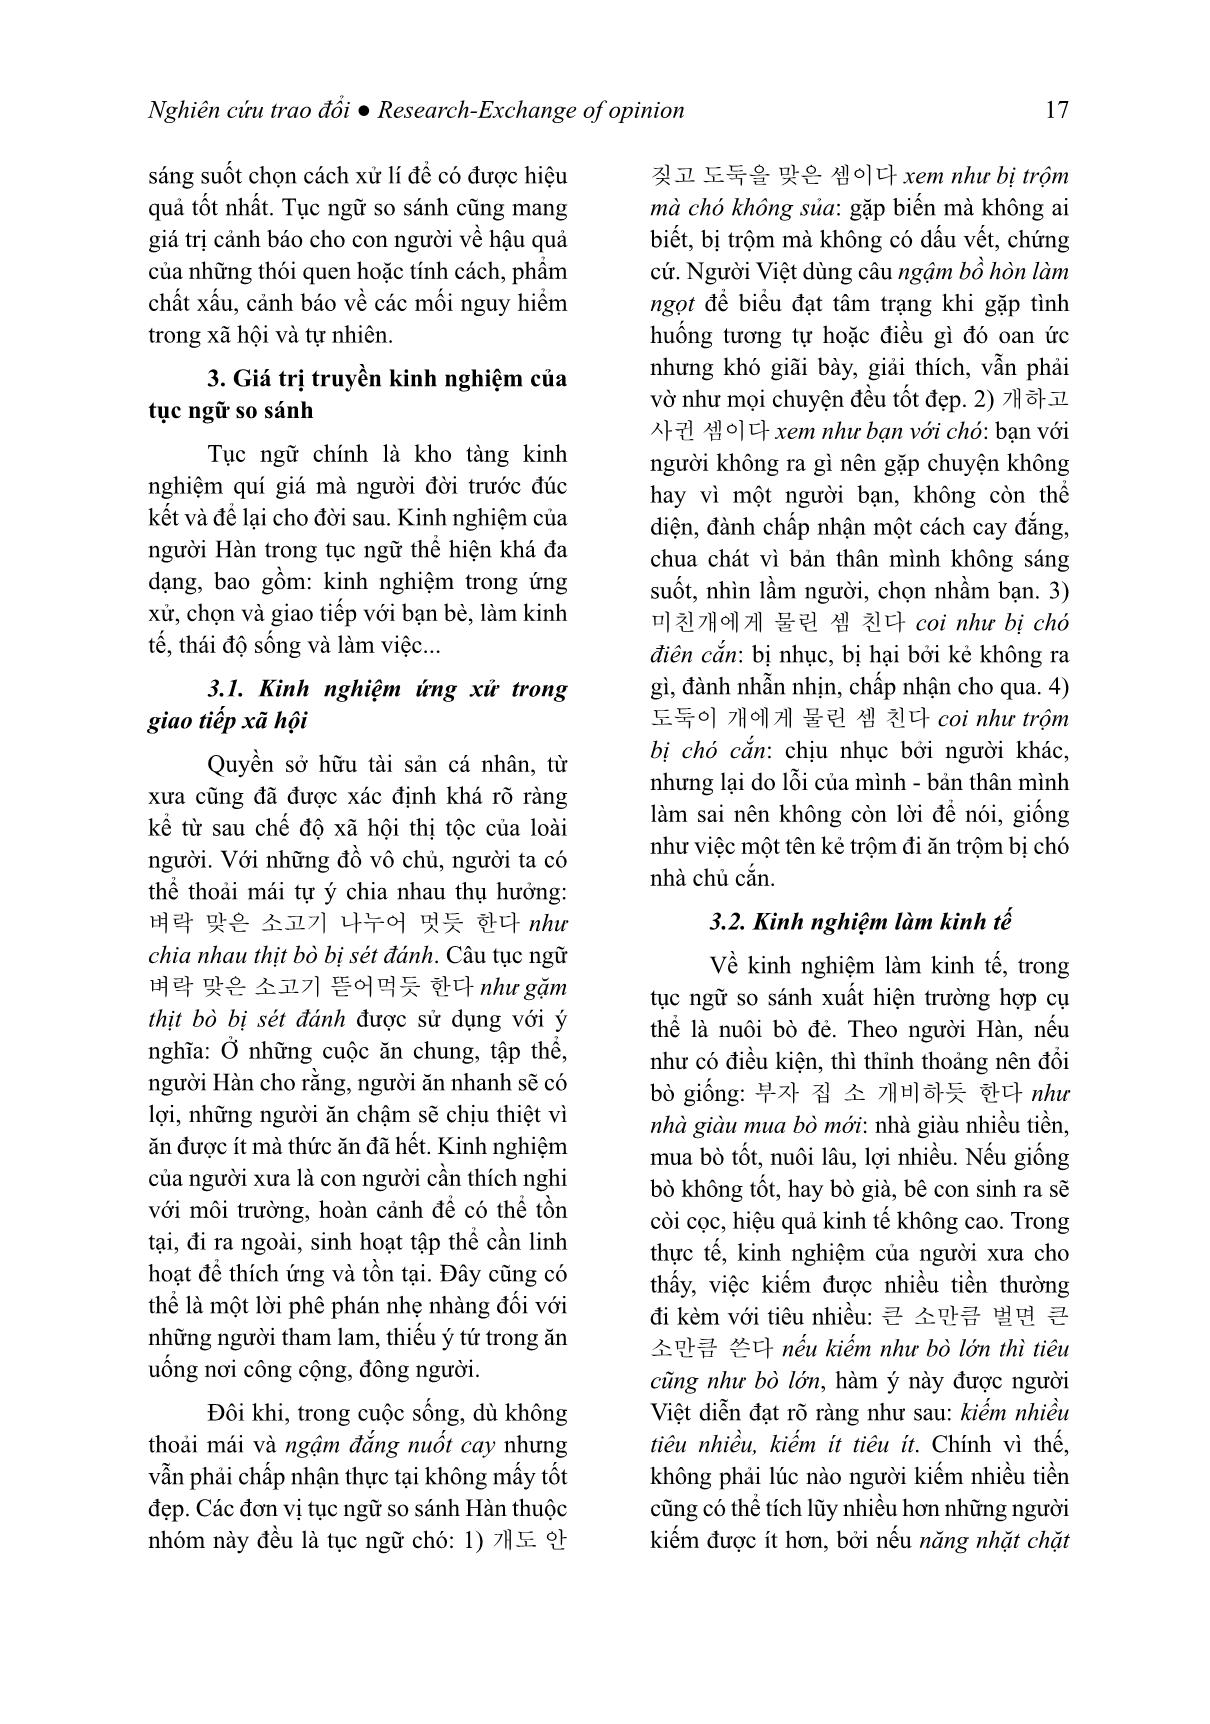 Giá trị giáo huấn của tục ngữ so sánh tiếng Hàn (Trọng tâm là các đơn vị có yếu tố chỉ con giáp) trang 8